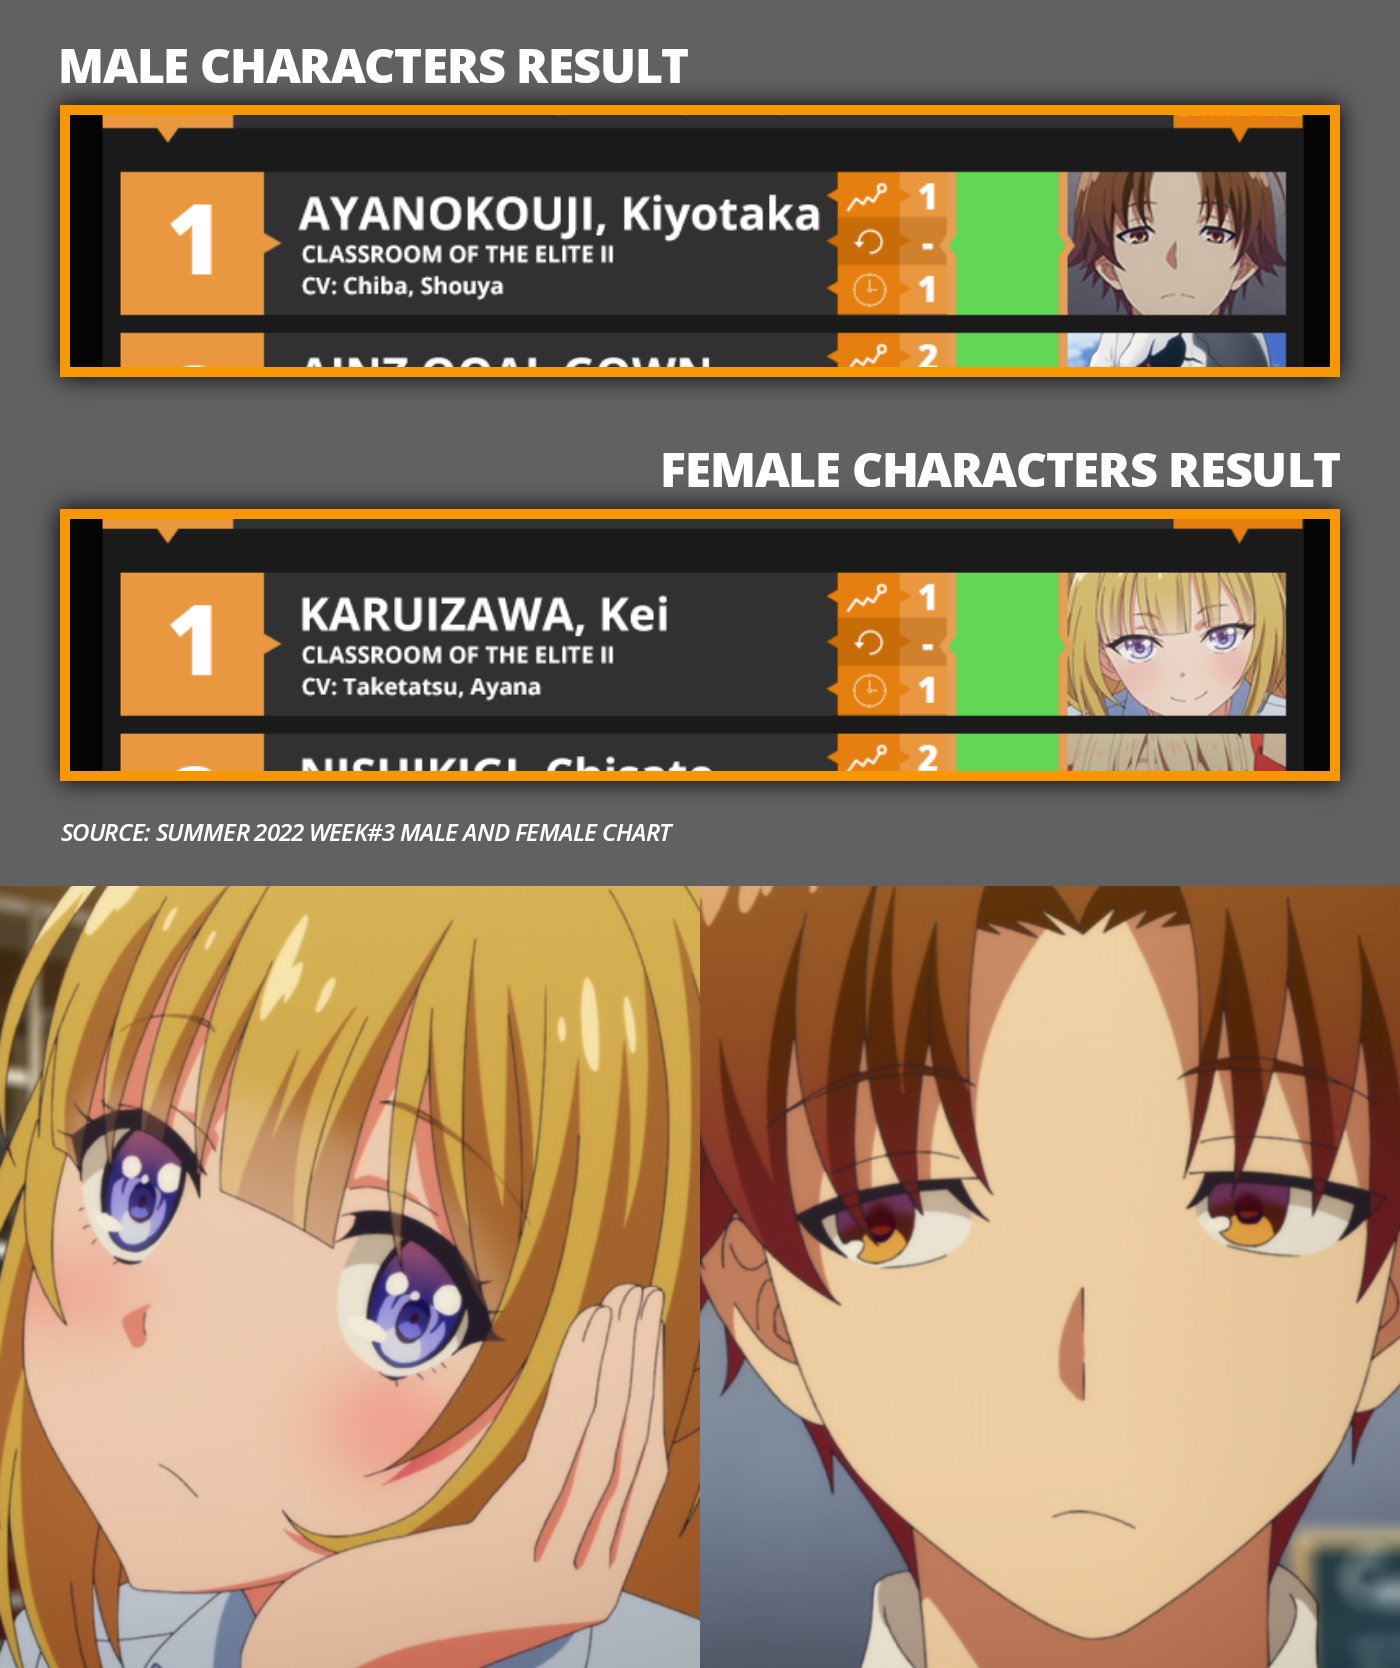 The relationship between Ayanokoji kiyotaka and Kei Karuizawa, Classr